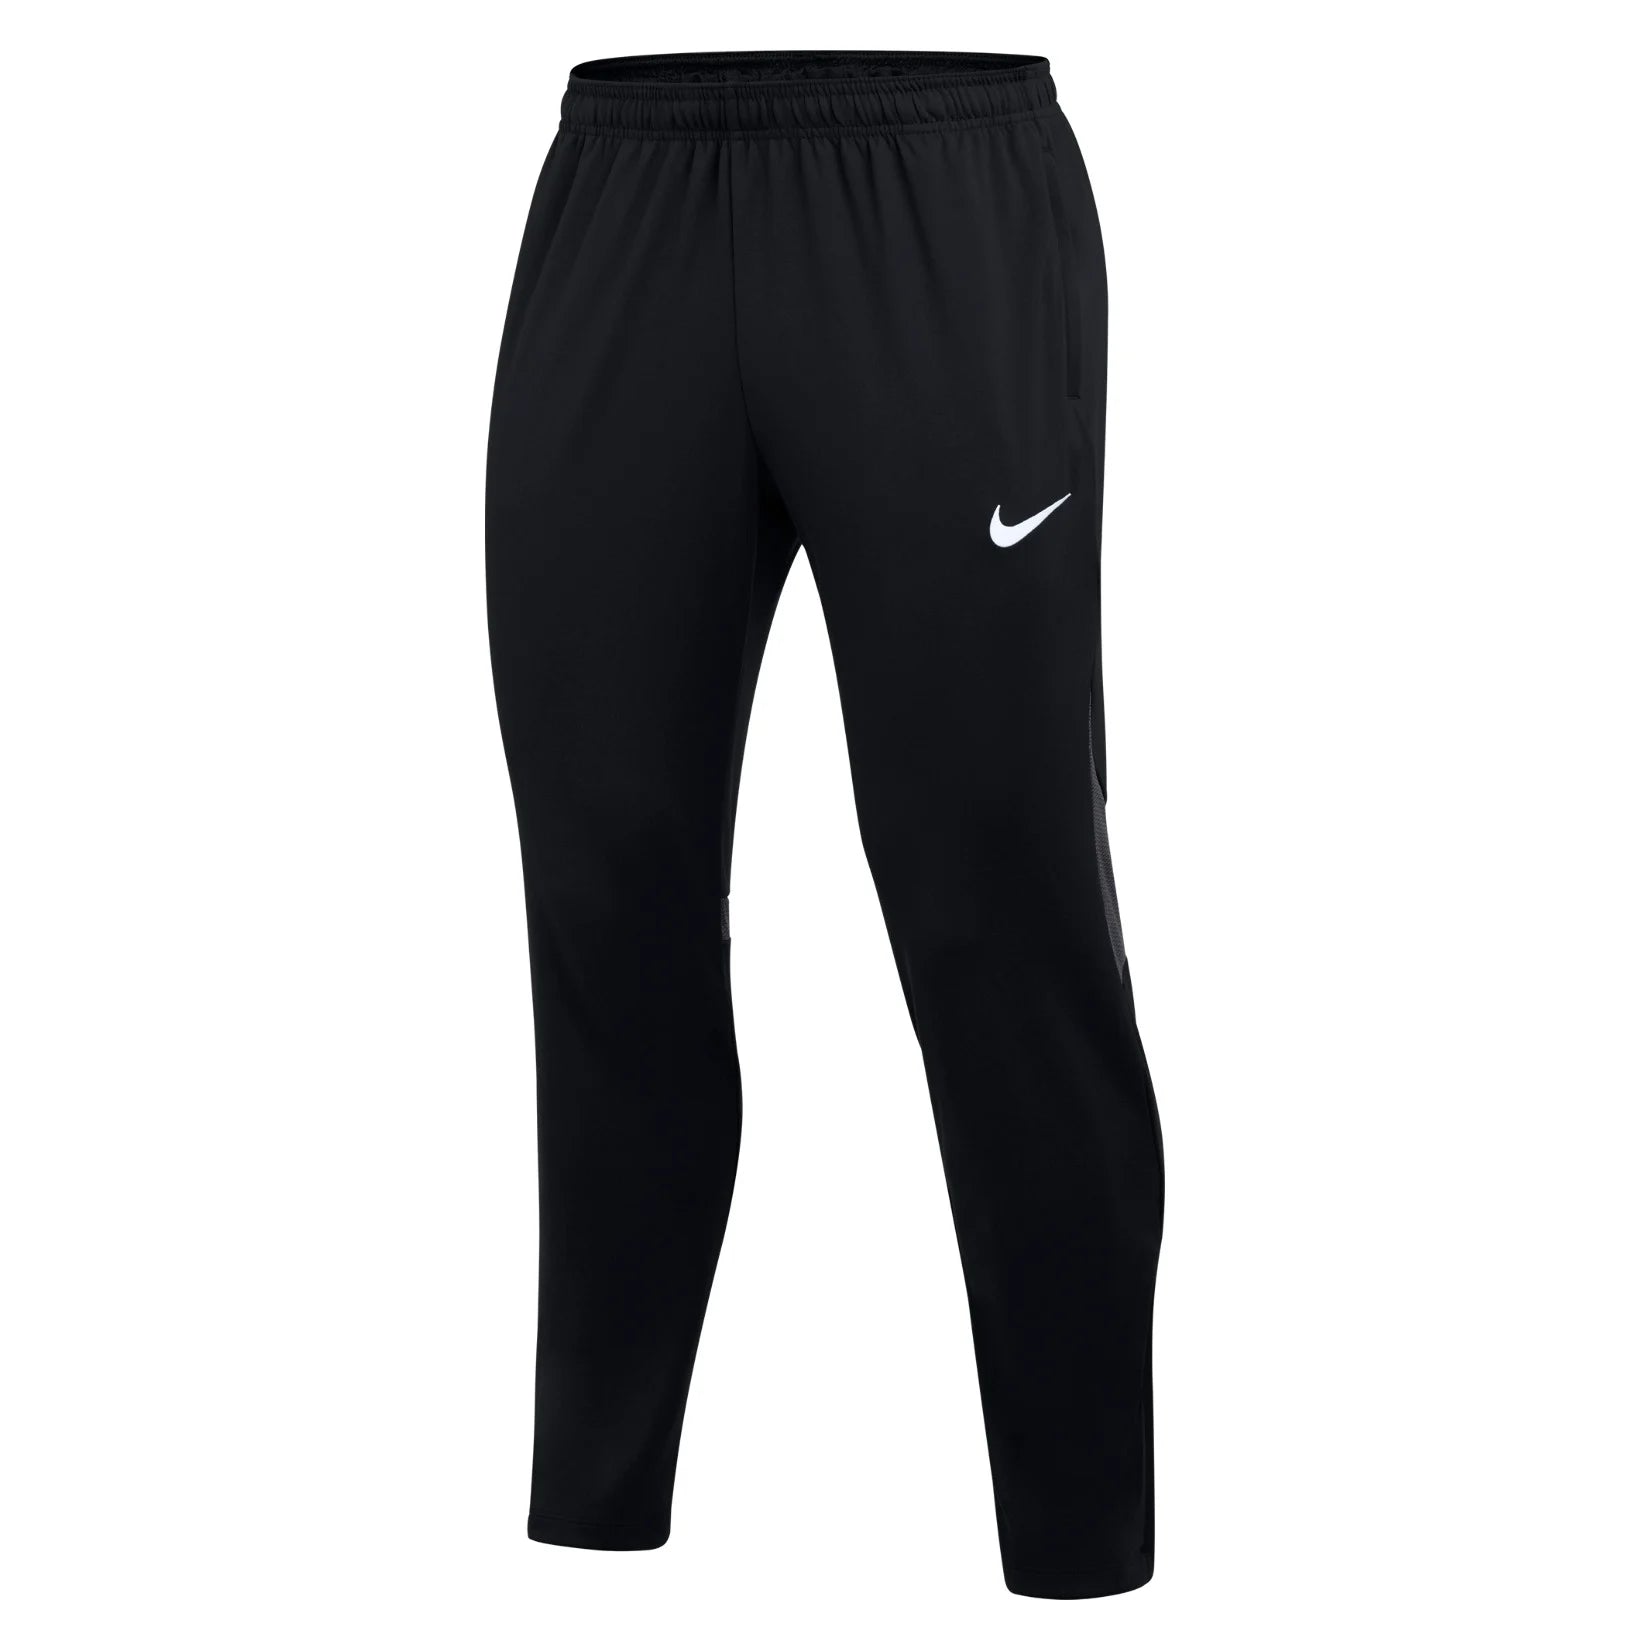 2023/24 Nike Referee Pants - A&H International